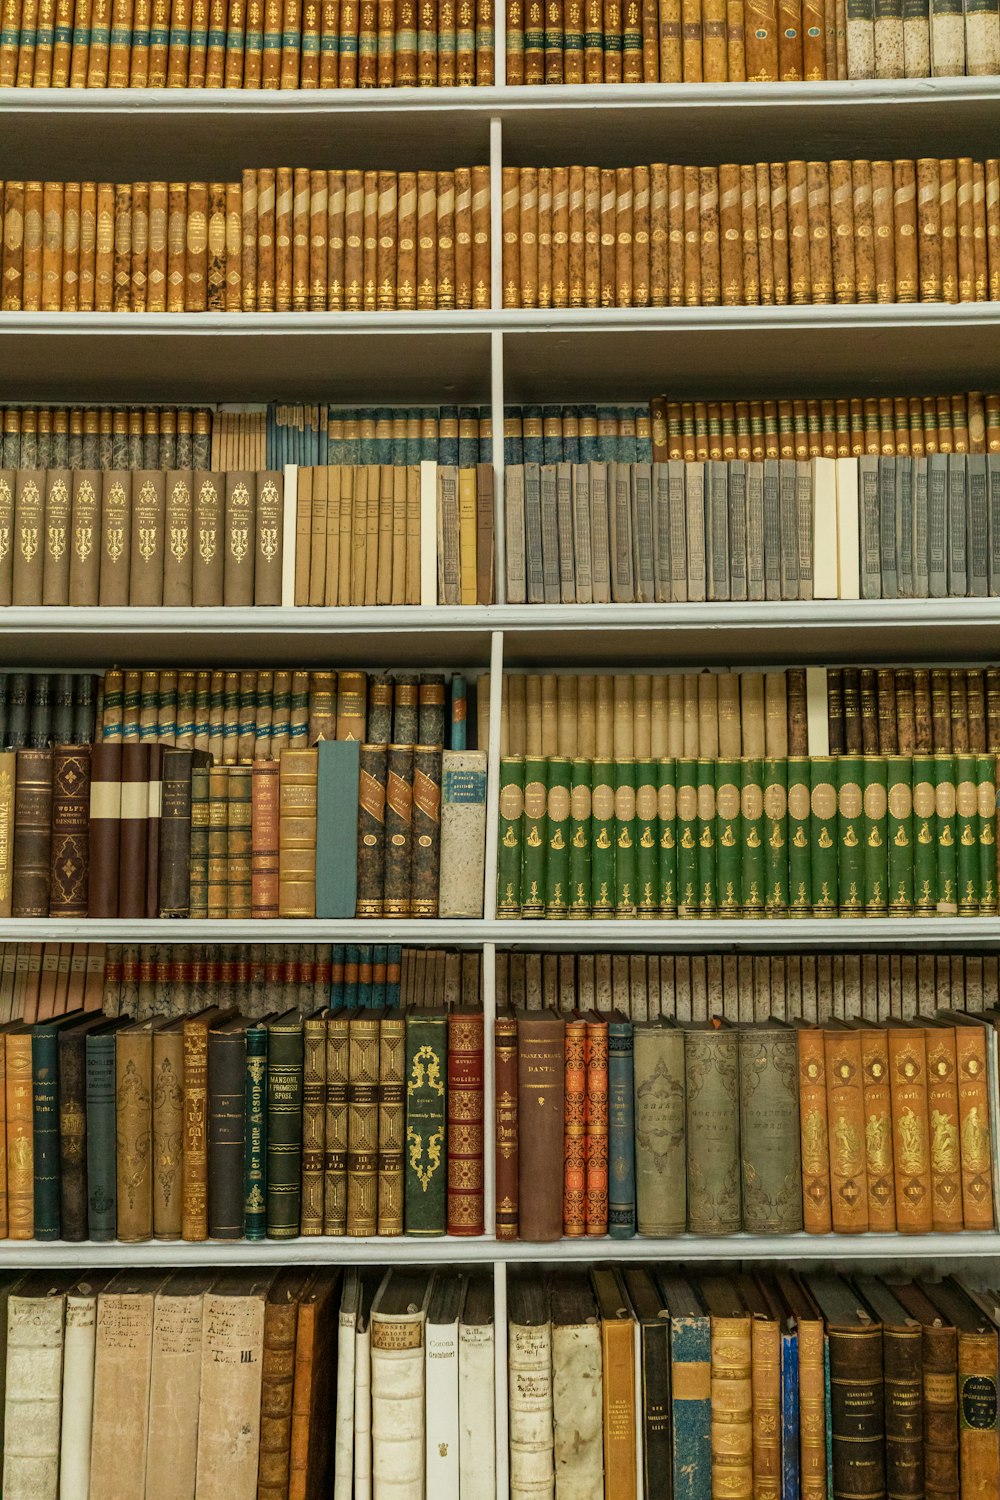 book lot inside shelves